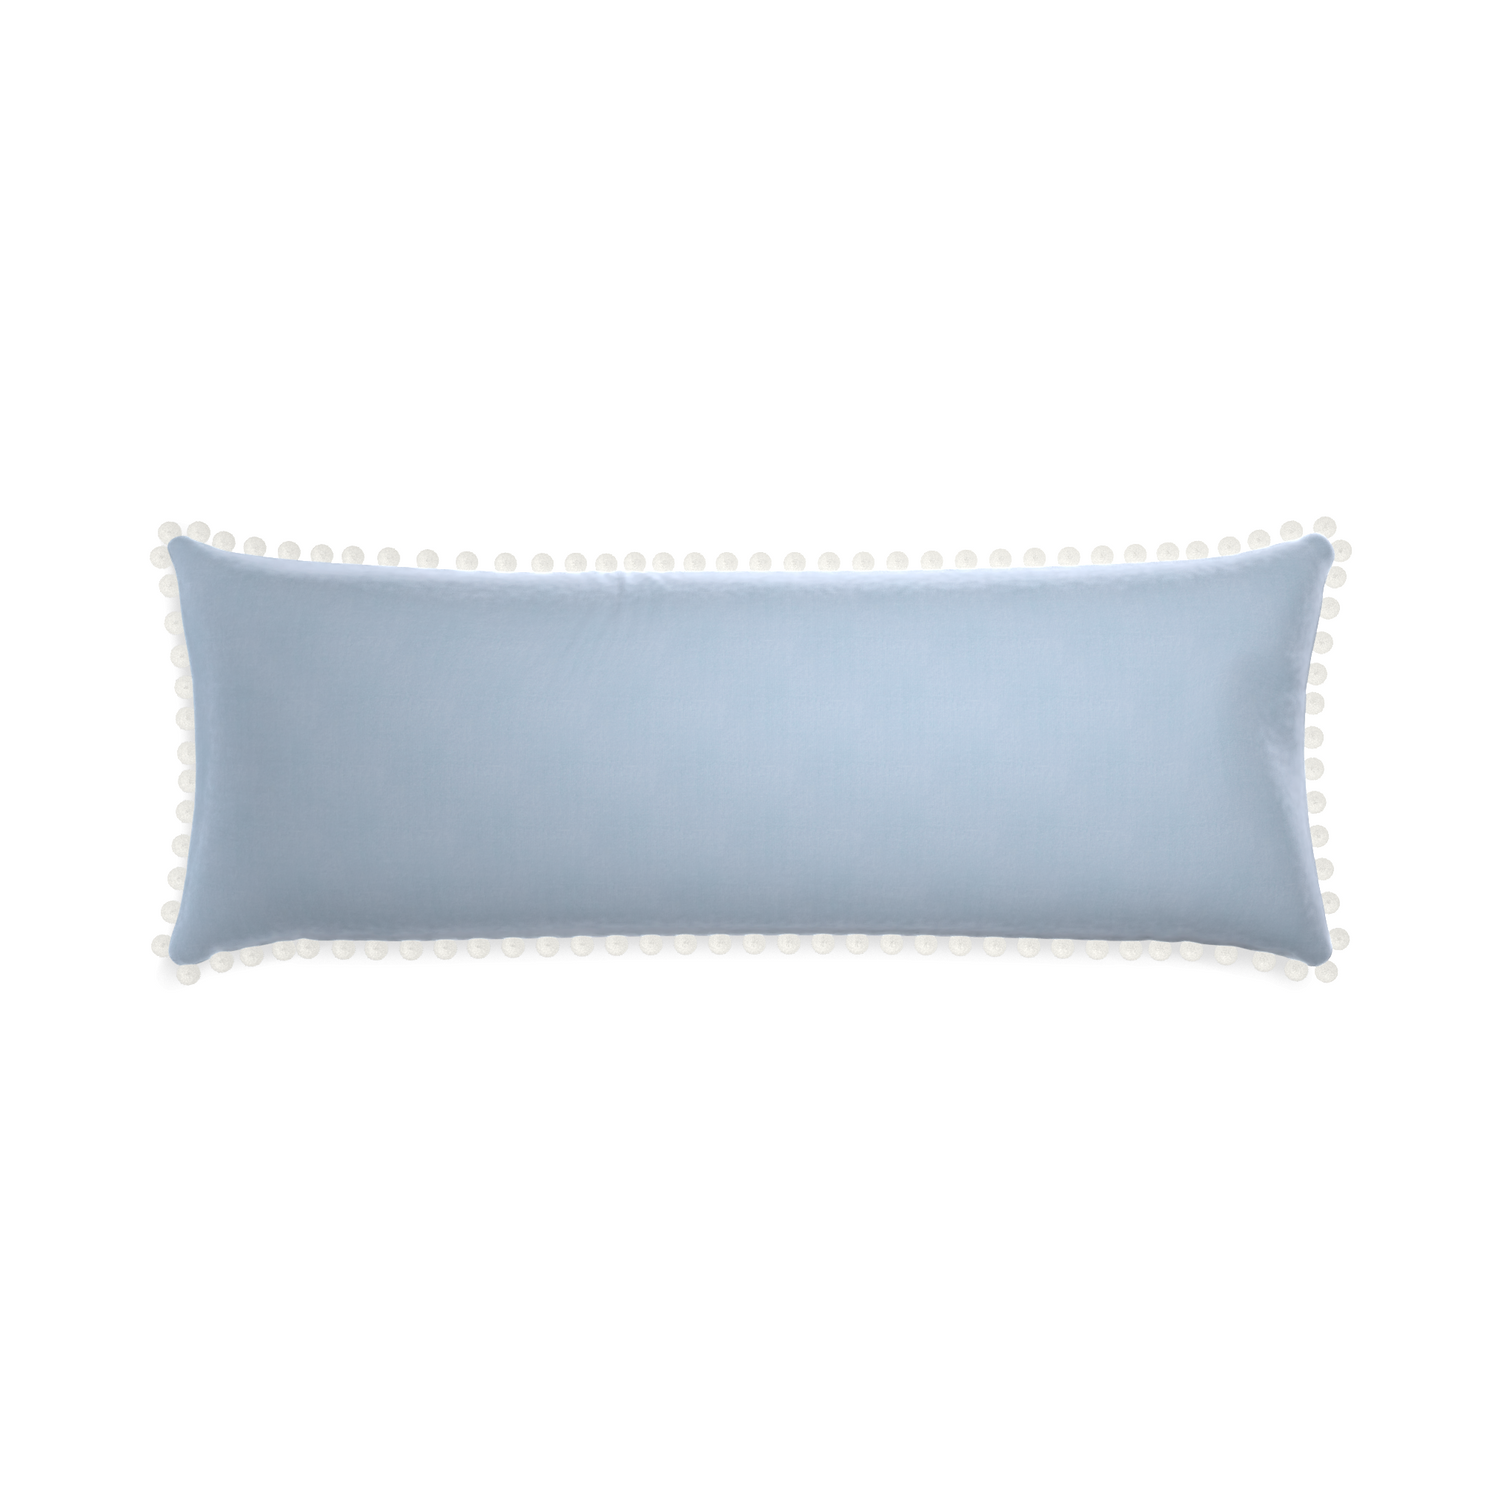 rectangle light blue velvet pillow with white pom pom